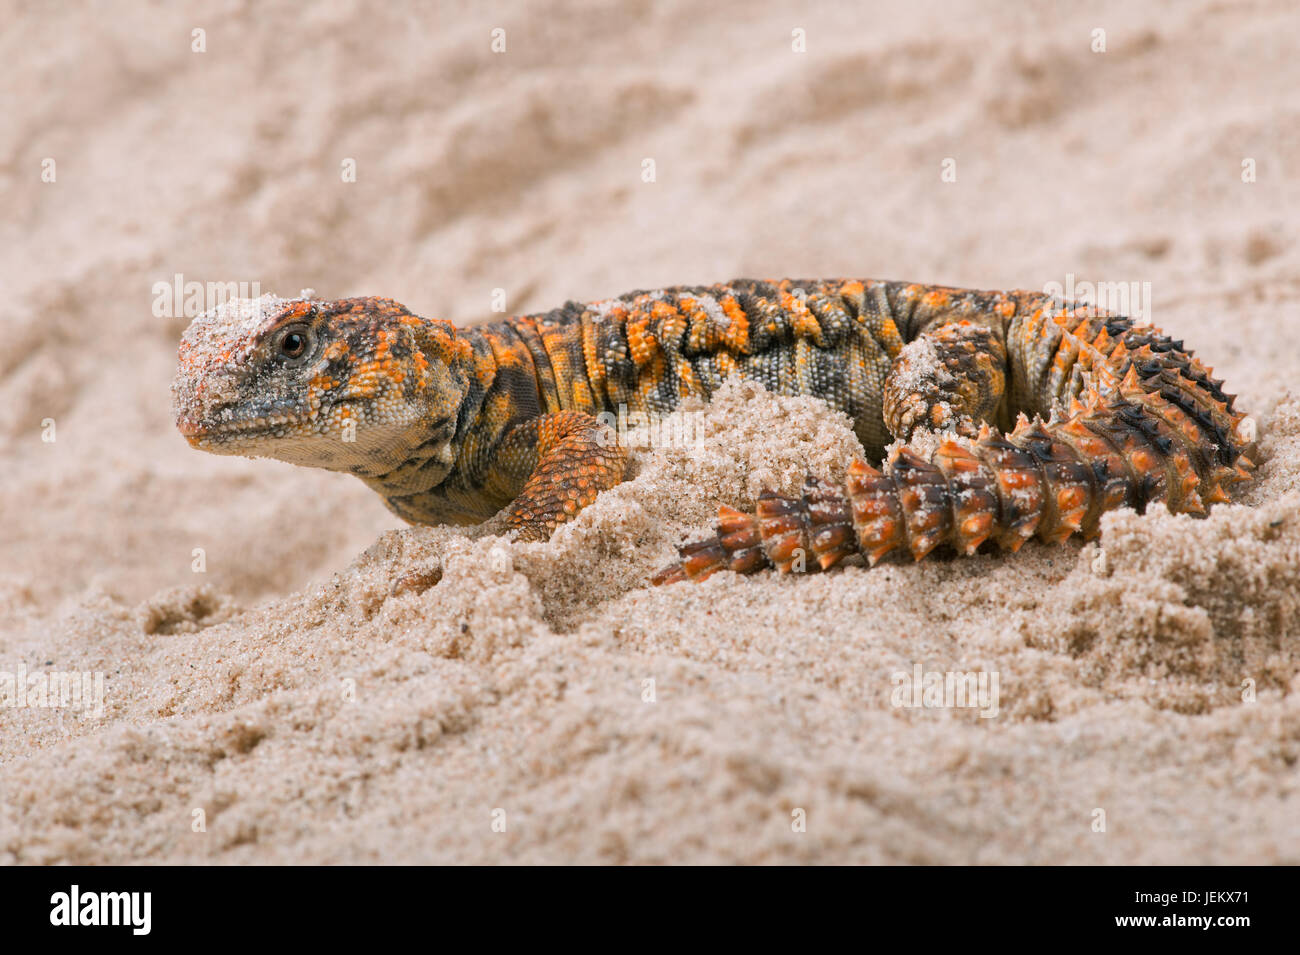 Saharan Spiny Tailed Lizard (Uromastyx Geyri) Stock Photo